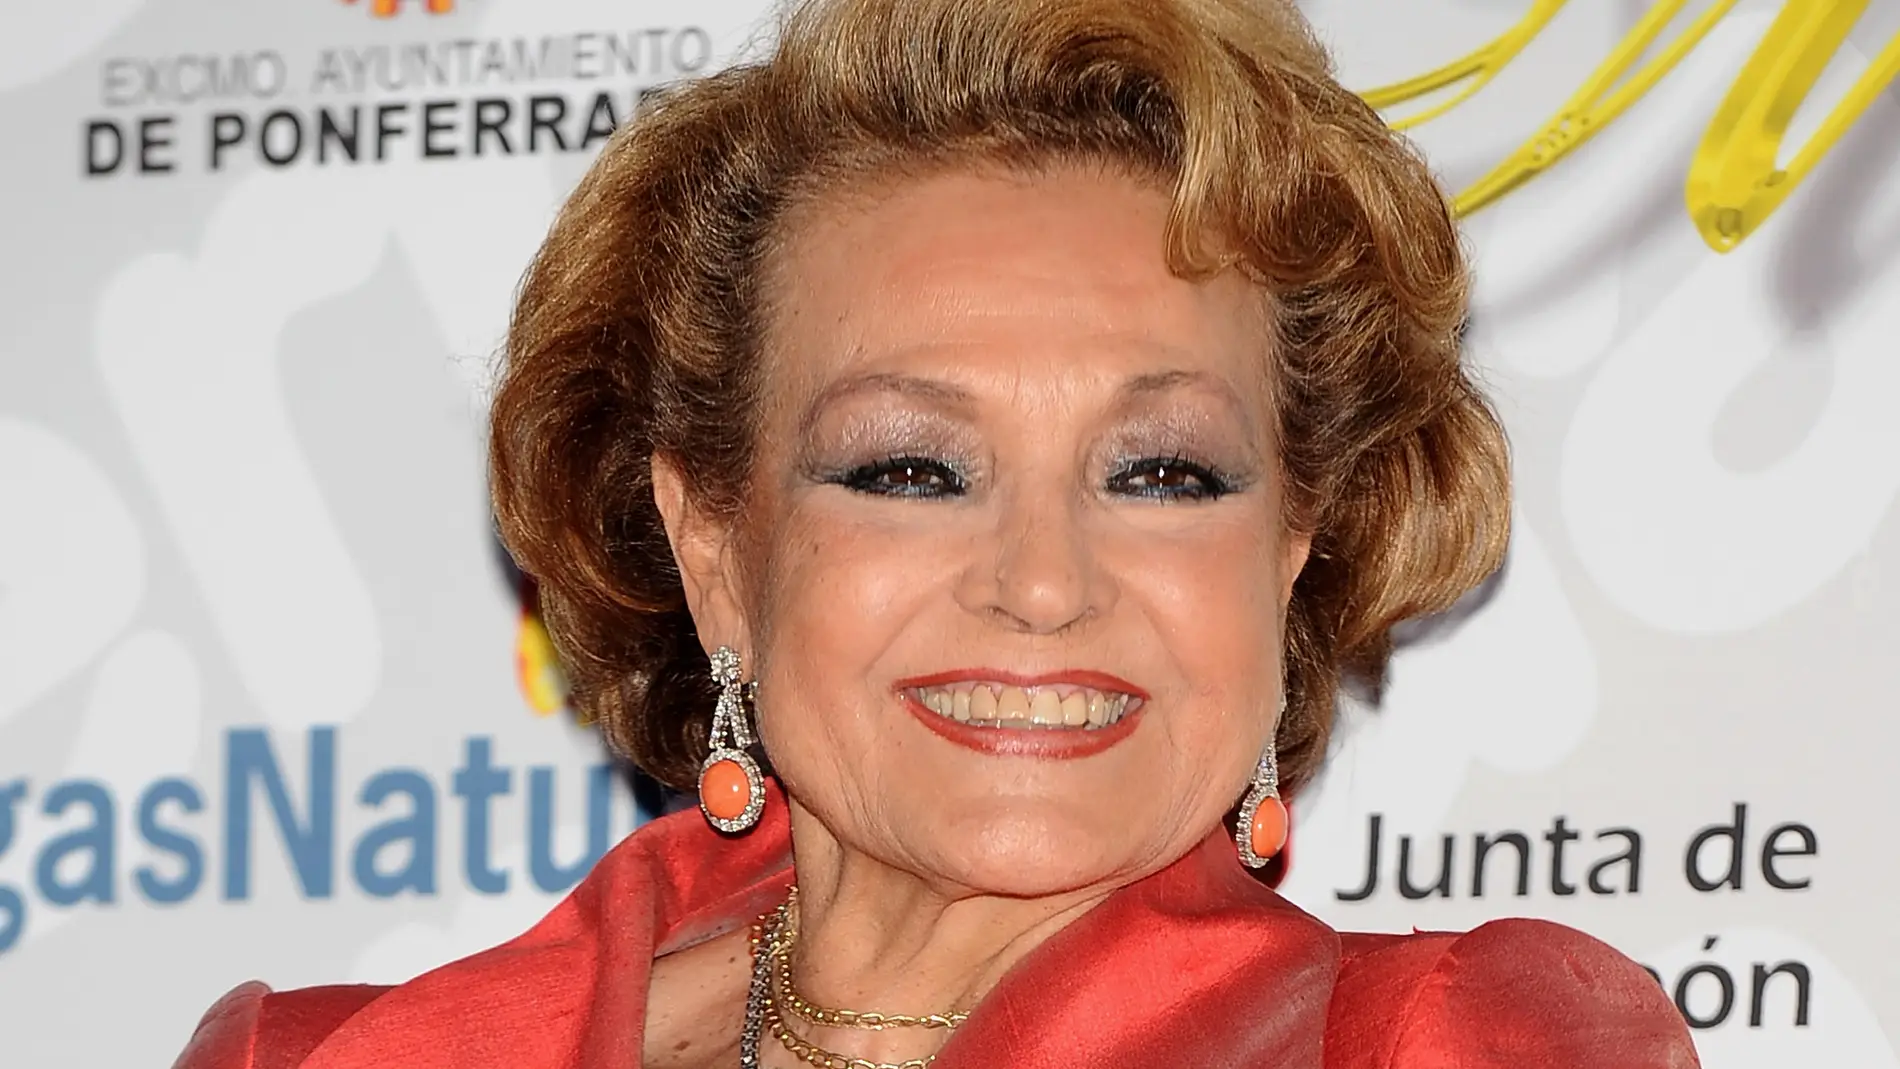 La actriz y presentadora Carmen Sevilla en una imagen de 2009/ Carlos Alvarez/Getty Images